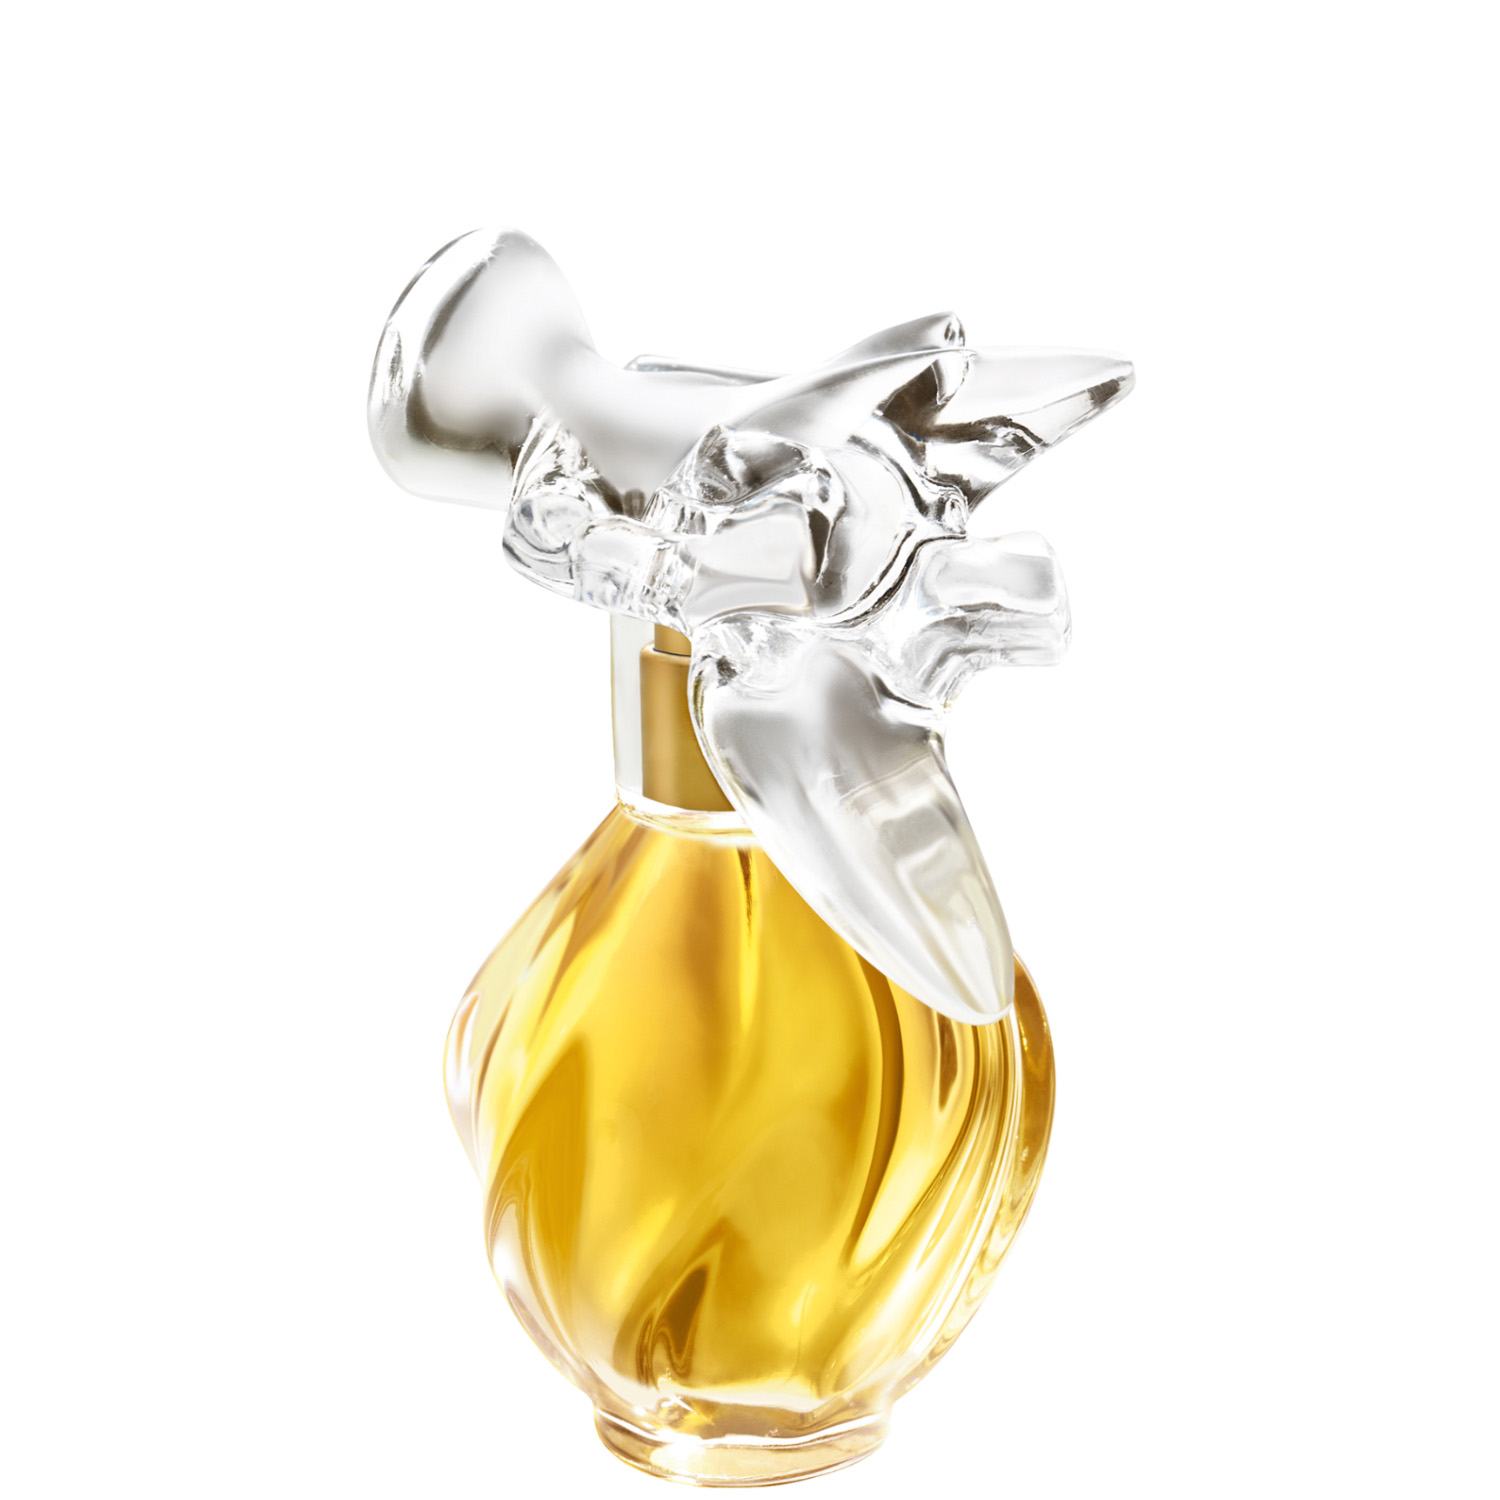 Nina Ricci L'Air du Temps Eau de Parfum 30ml